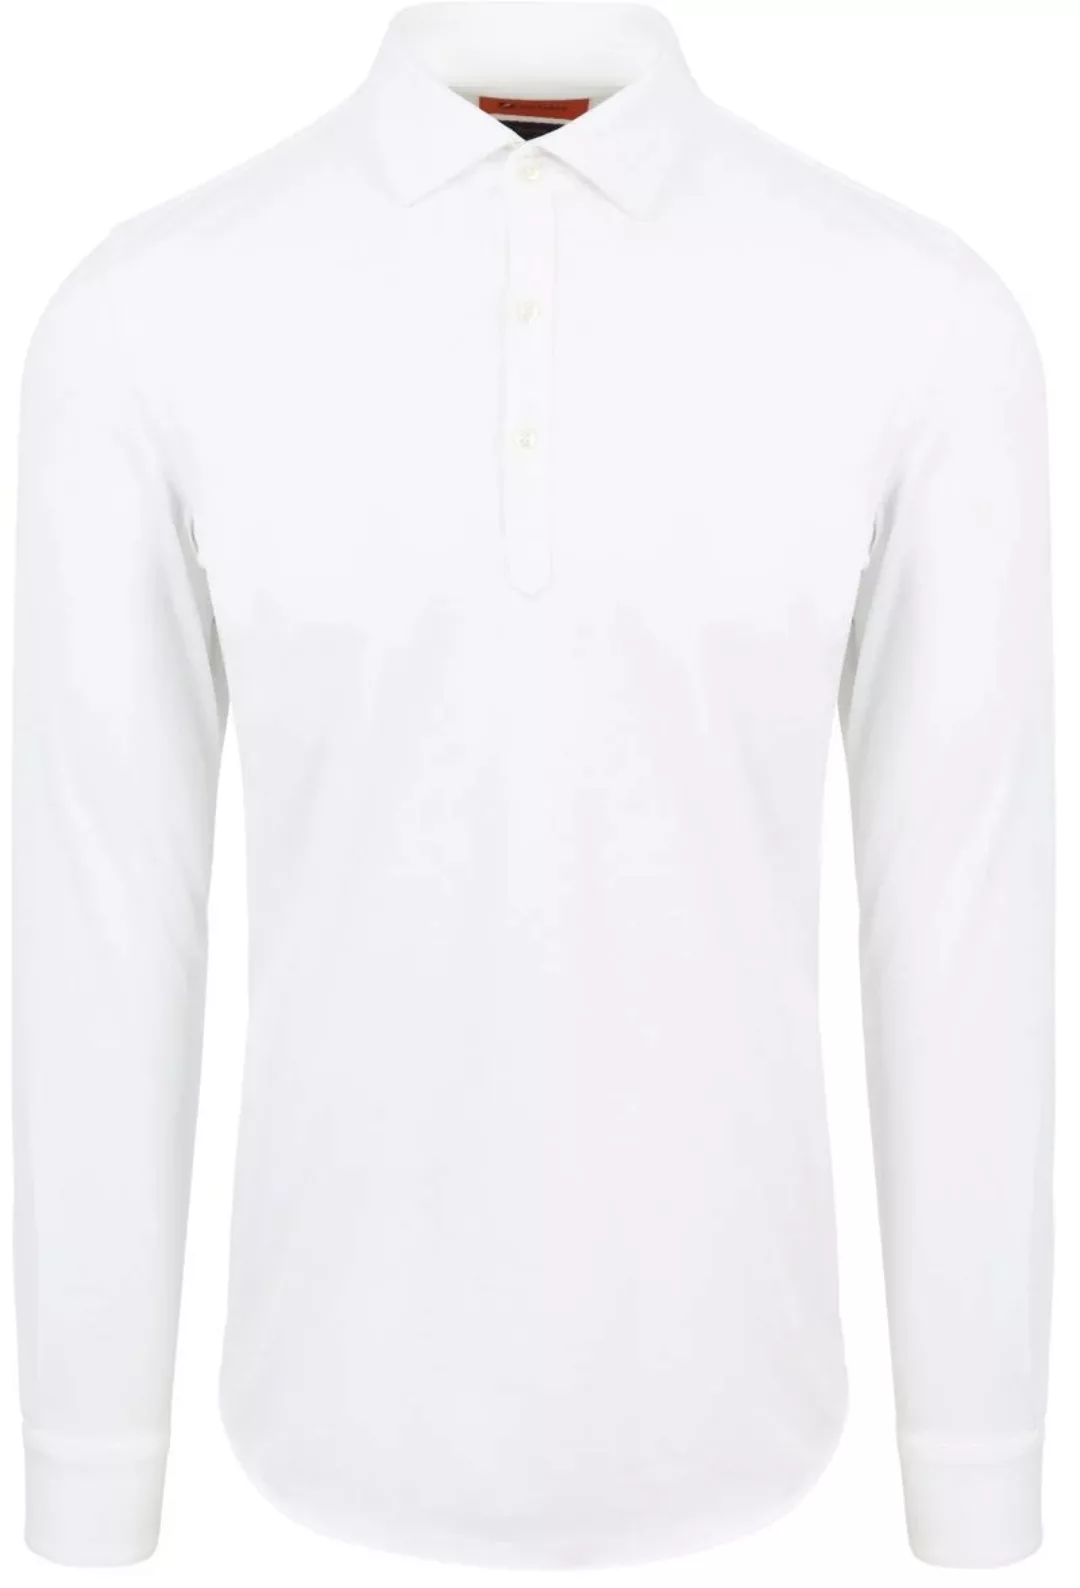 Suitable Camicia Poloshirt Weiß - Größe XL günstig online kaufen